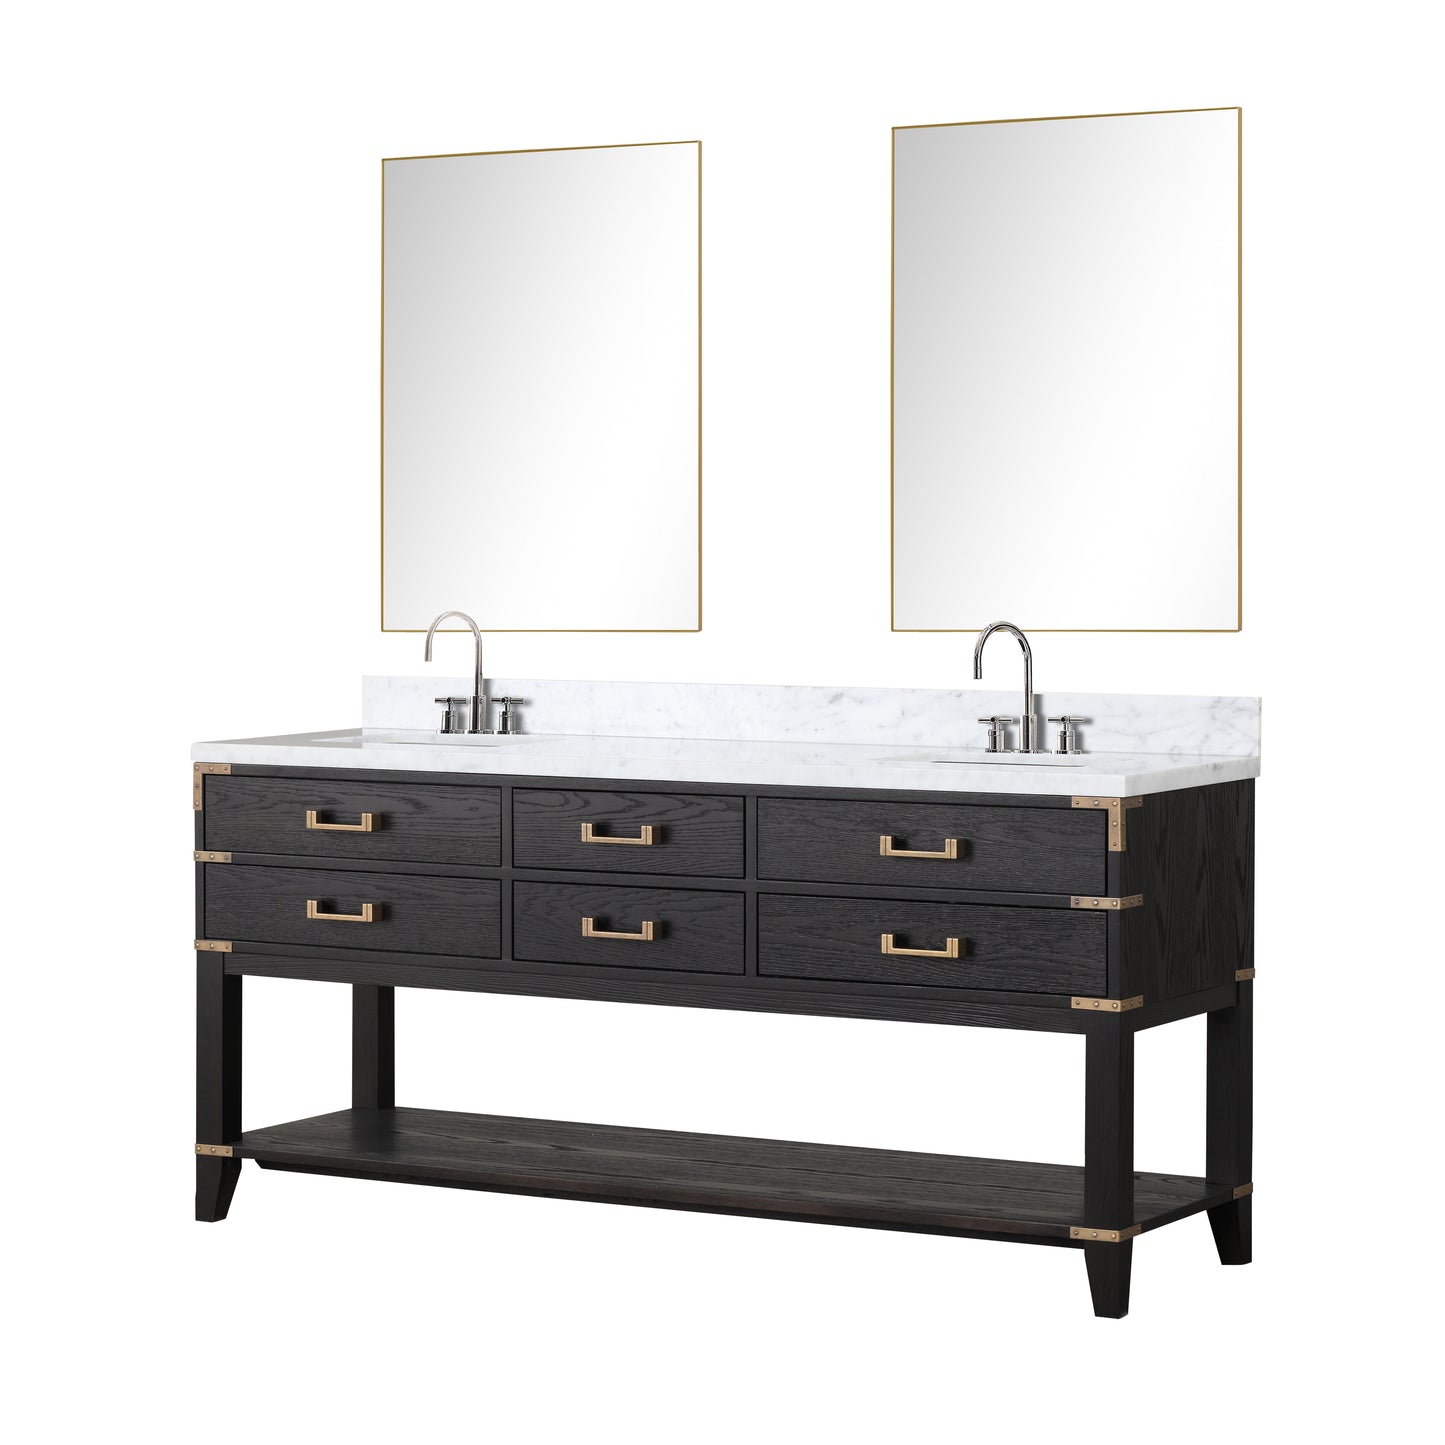 Lexora Collection Norwalk 72 inch Double Bath Vanity and Carrara Marble Top - Luxe Bathroom Vanities